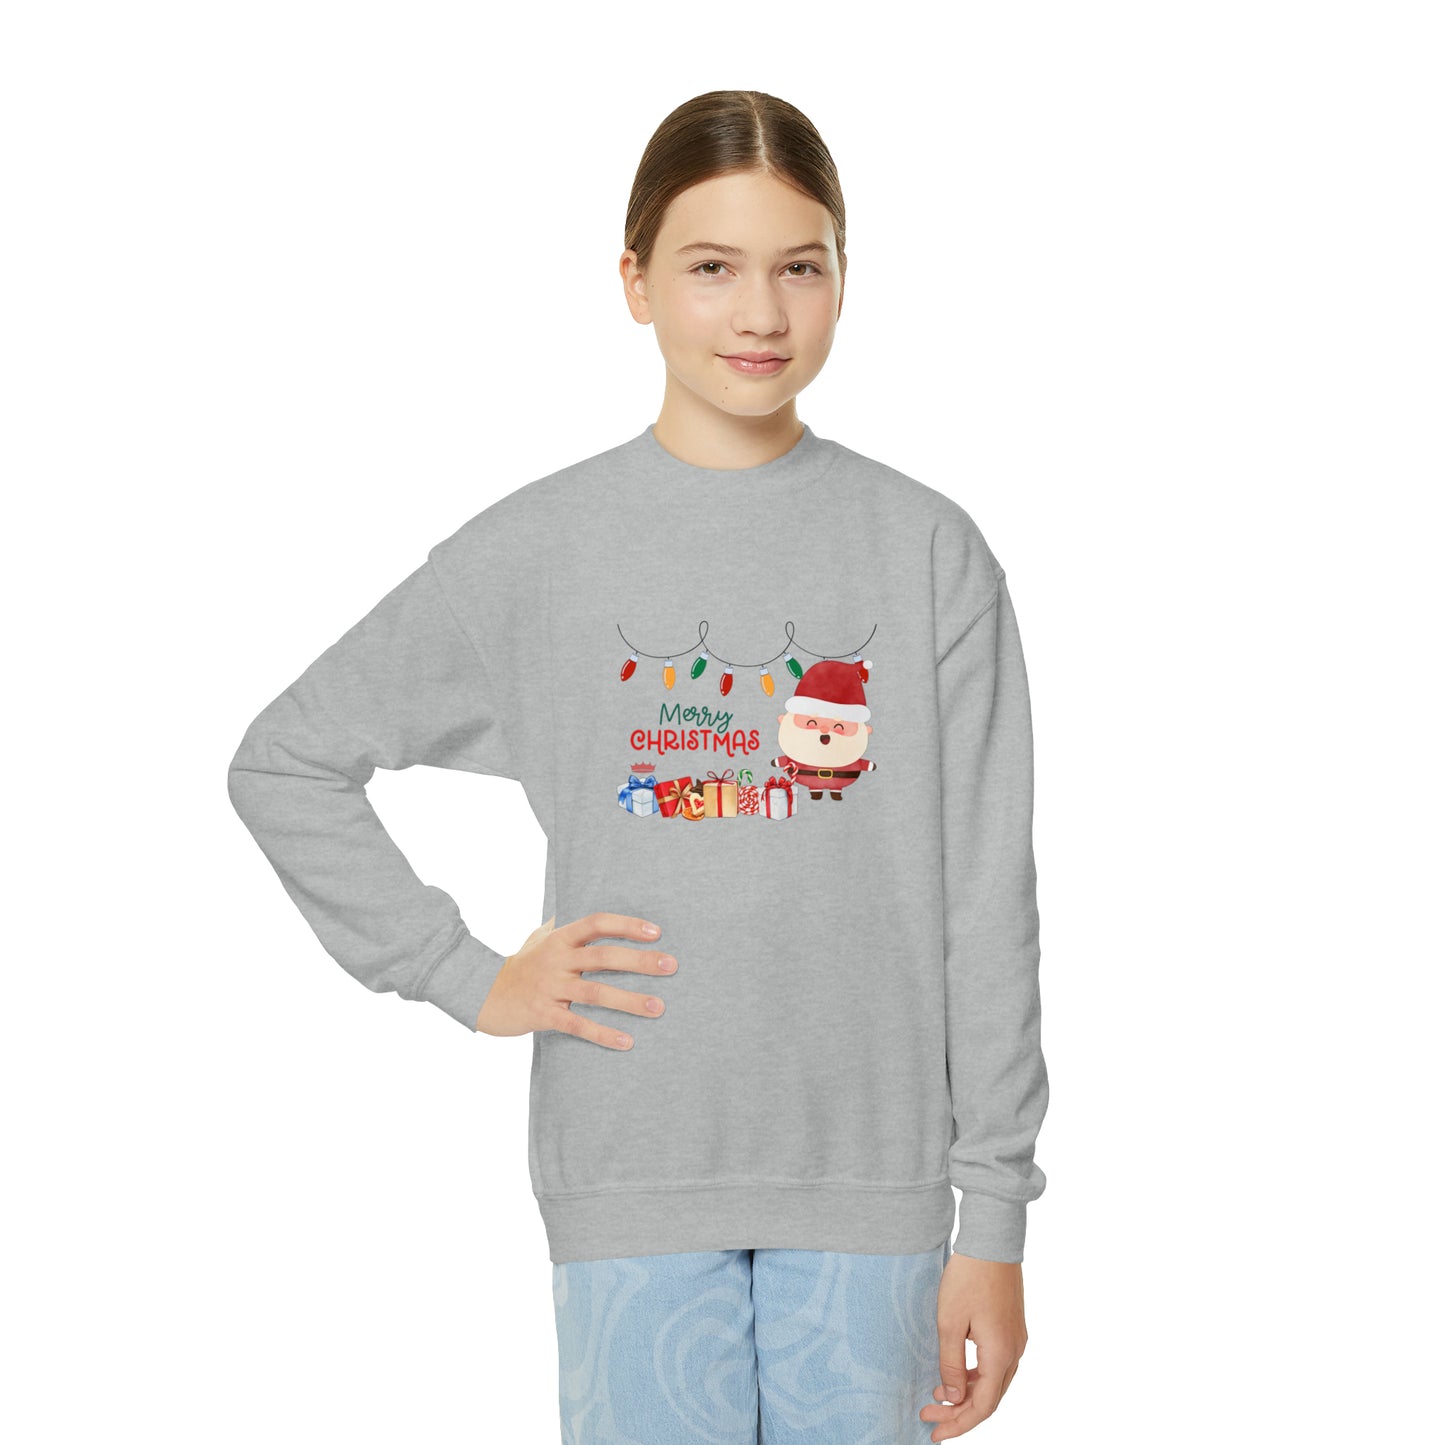 MERRY CHRISTMAS Youth Crewneck Sweatshirt